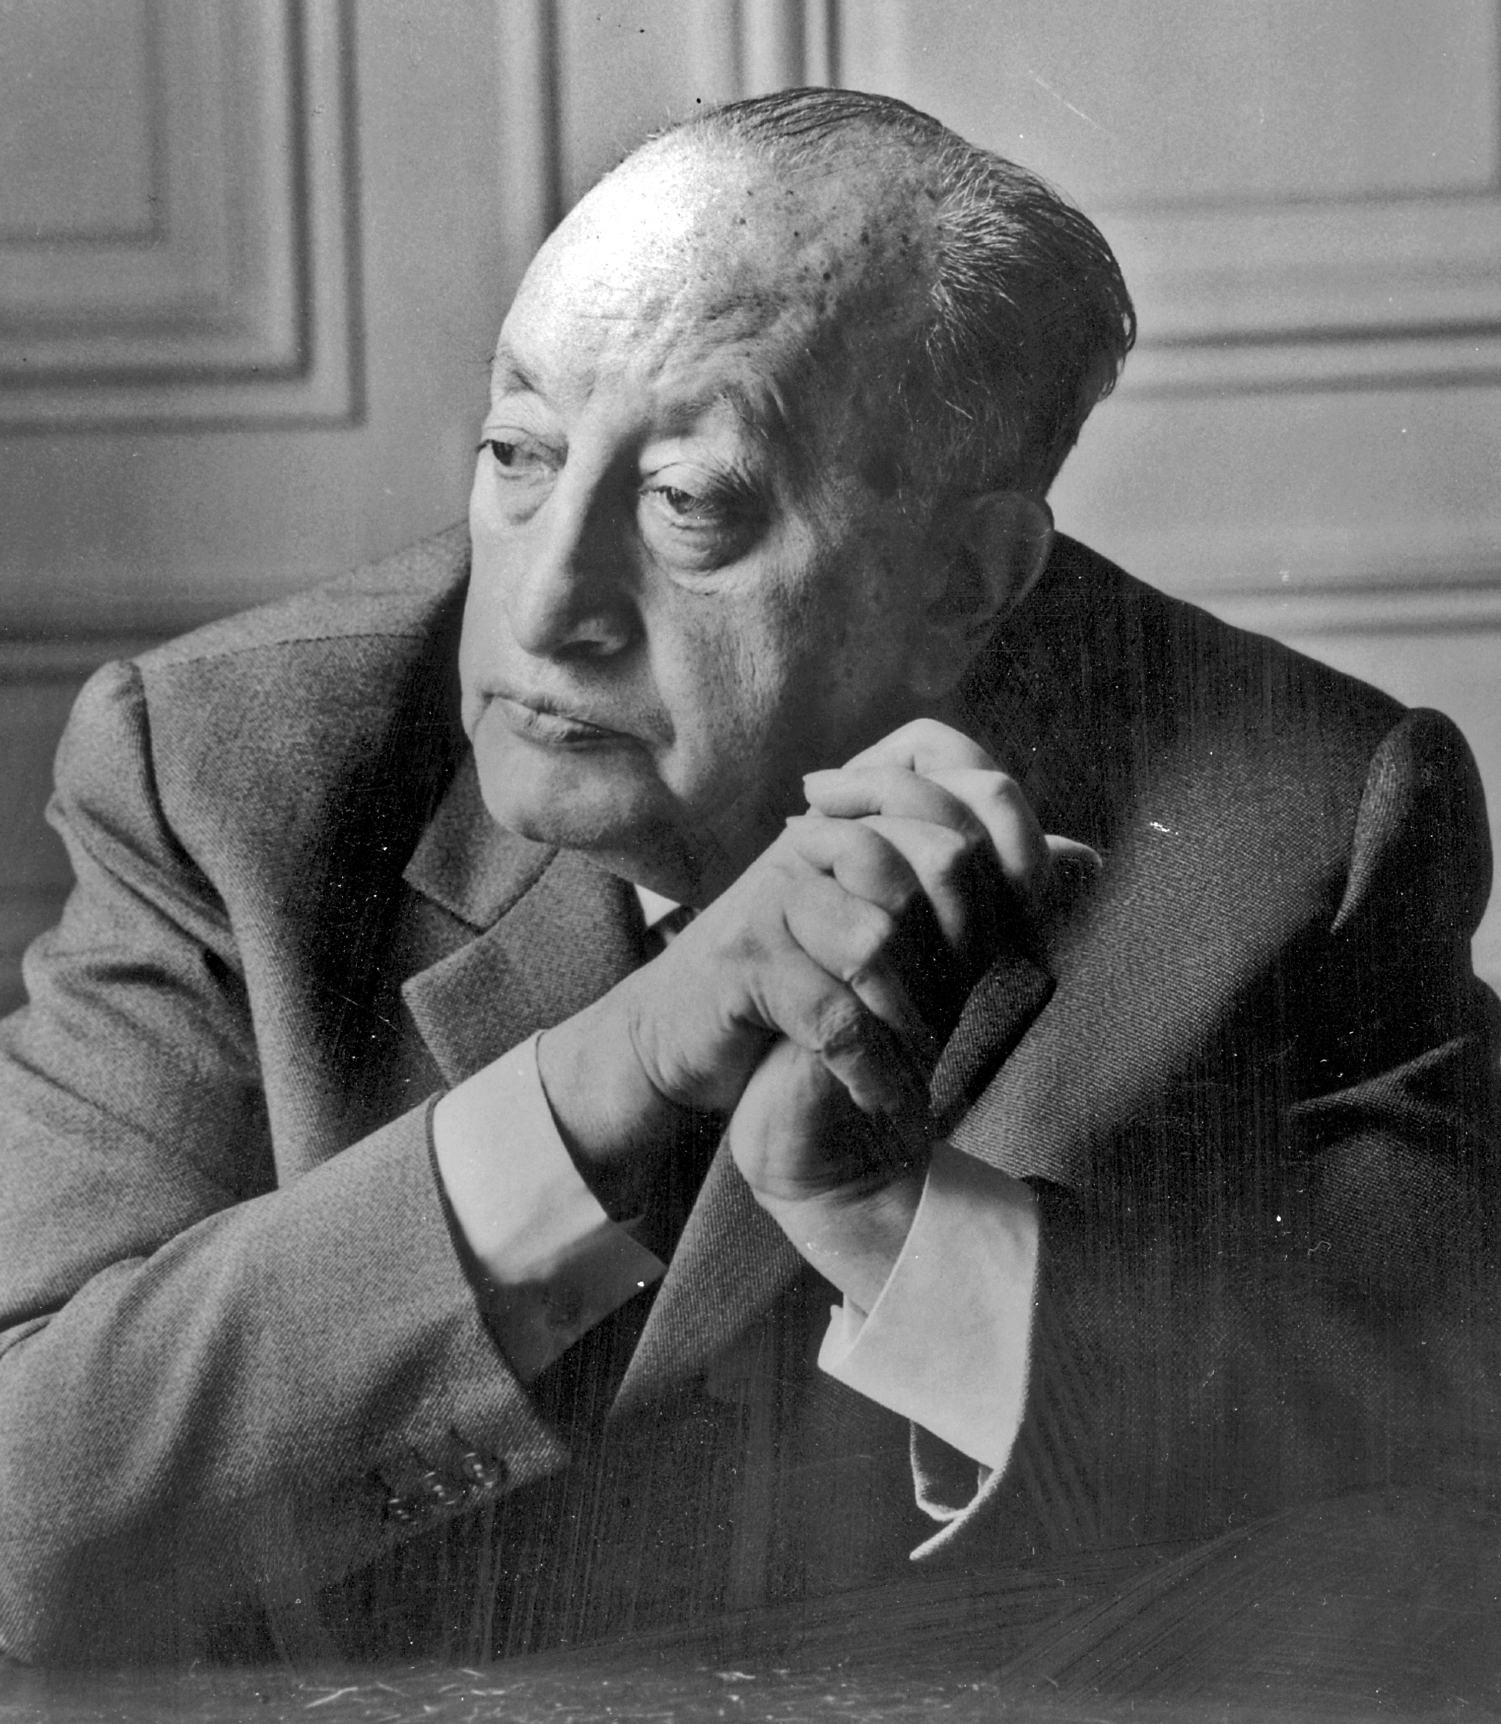 Retrato de Miguel Ángel Asturias (1899-1974), Premio Nobel de Literatura 1967. Foto familiar gentileza de su hijo, Miguel Ángel Asturias Amado.